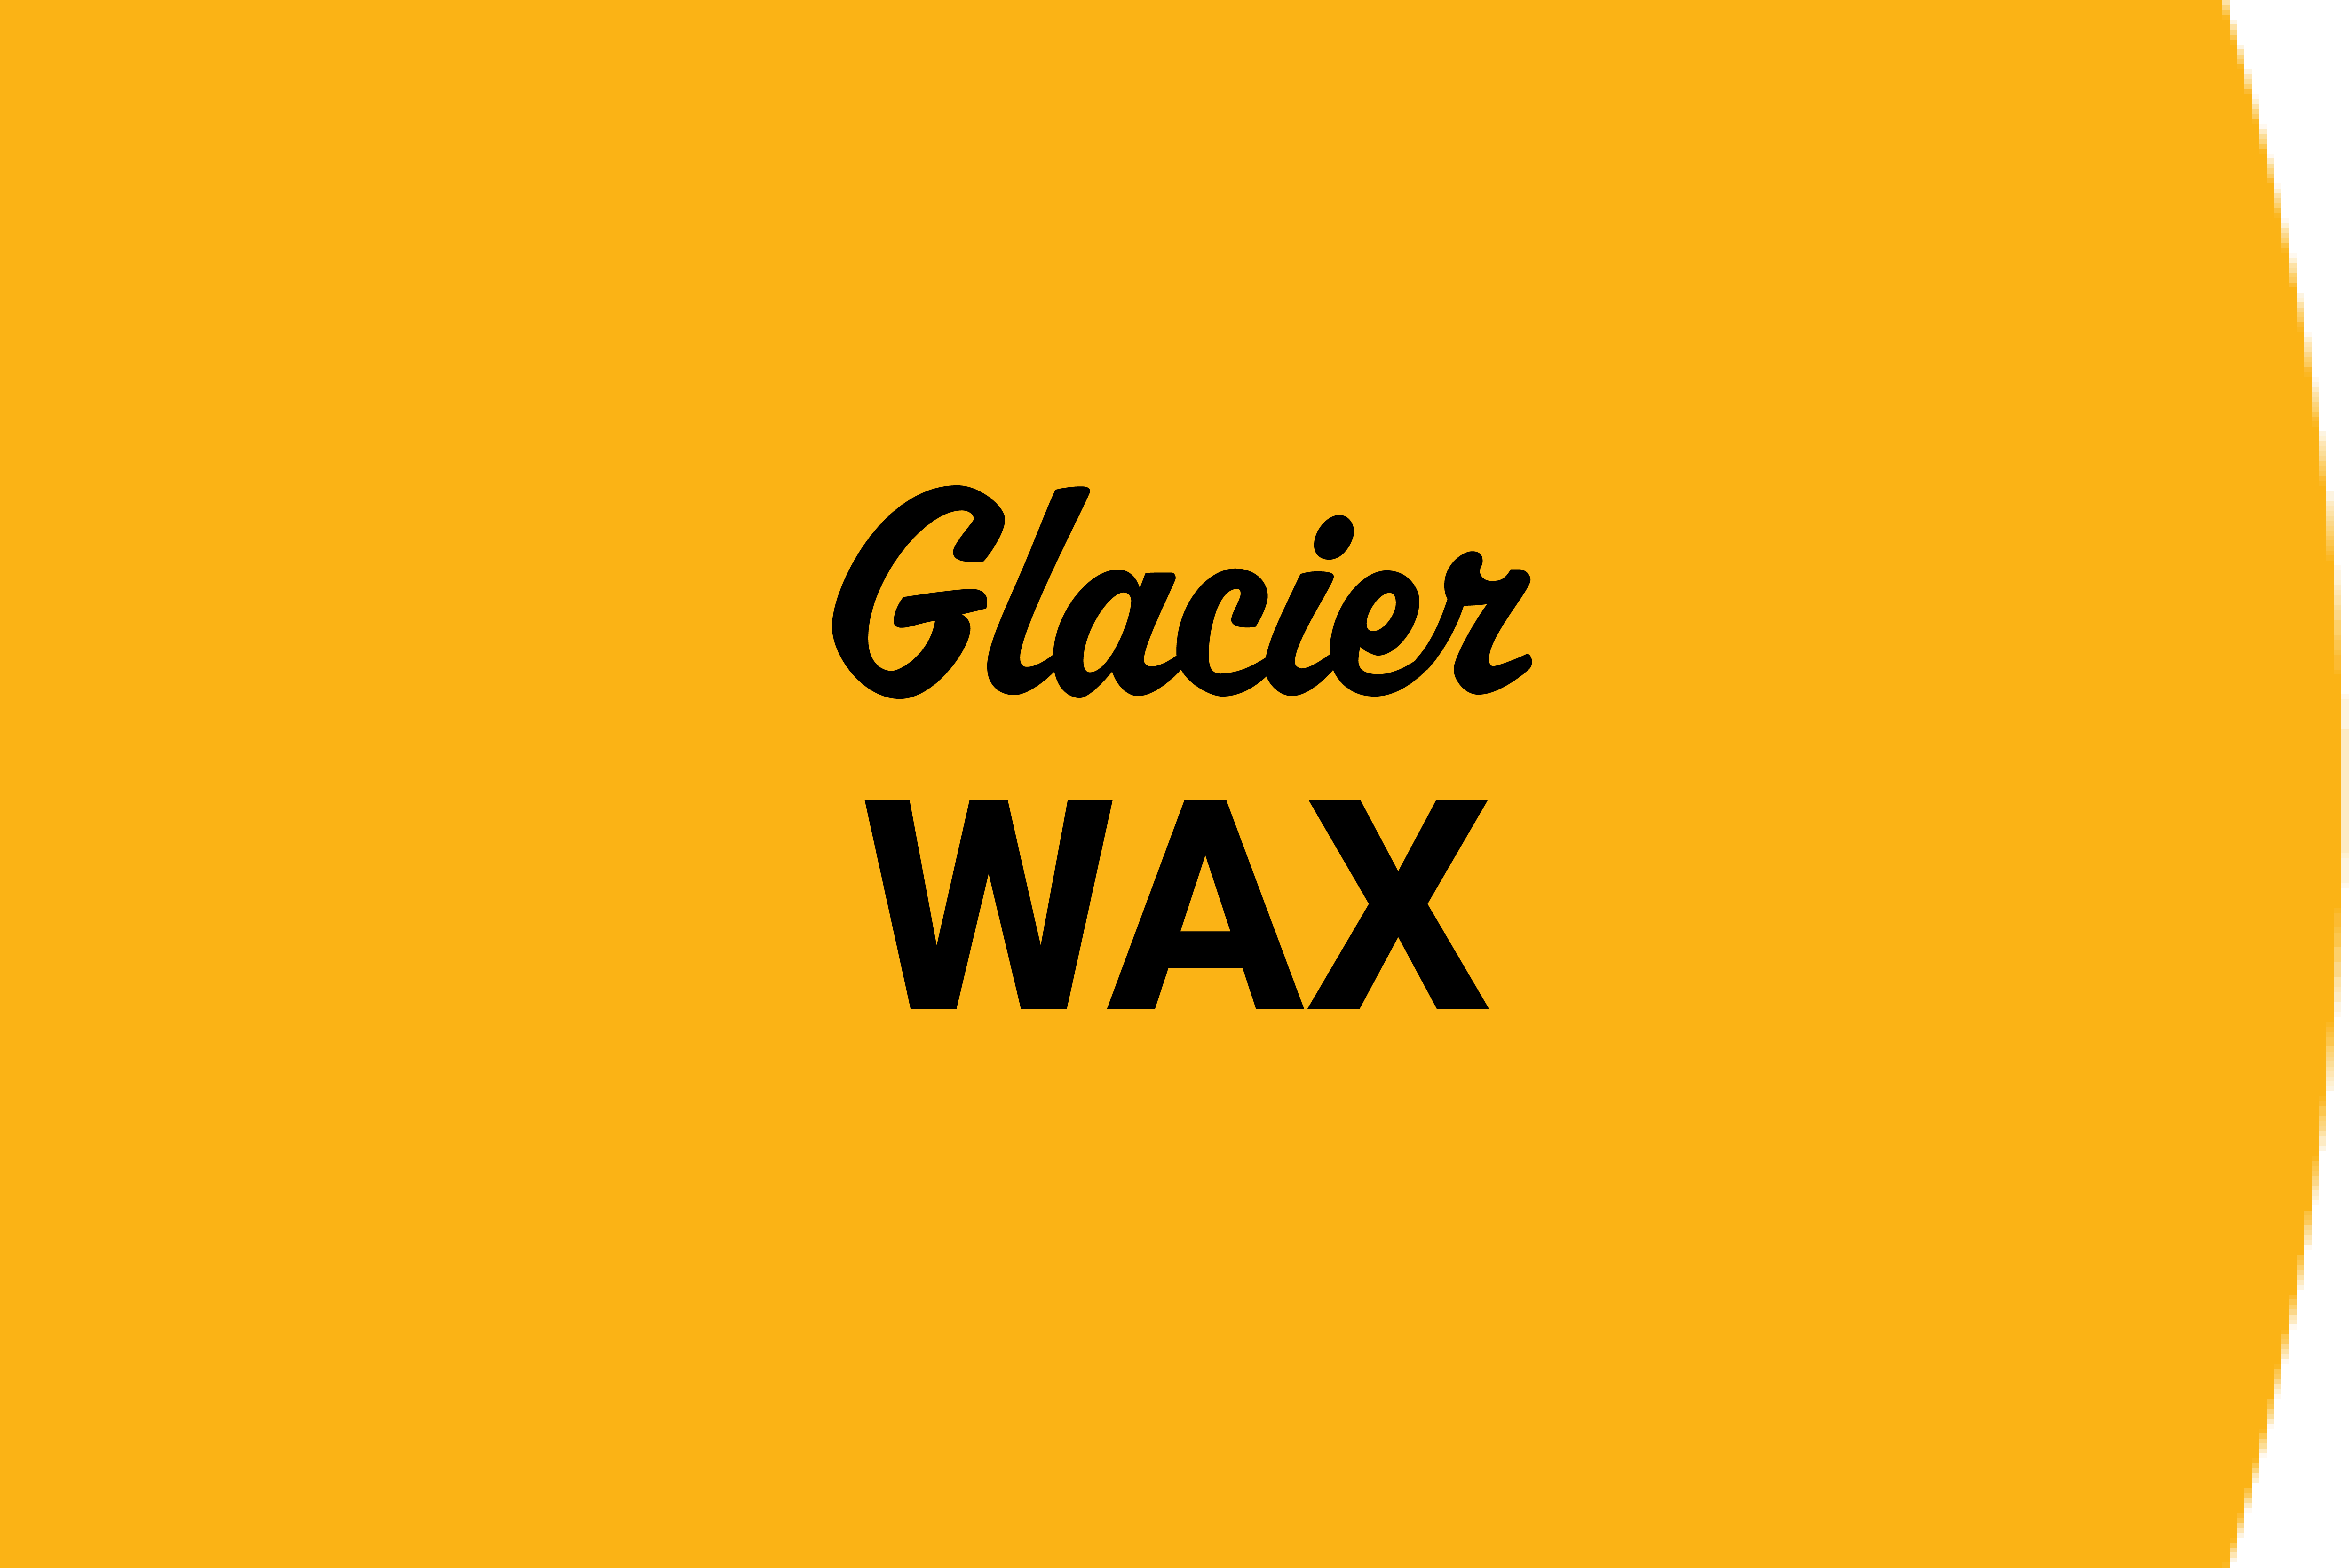 Glacier Wax